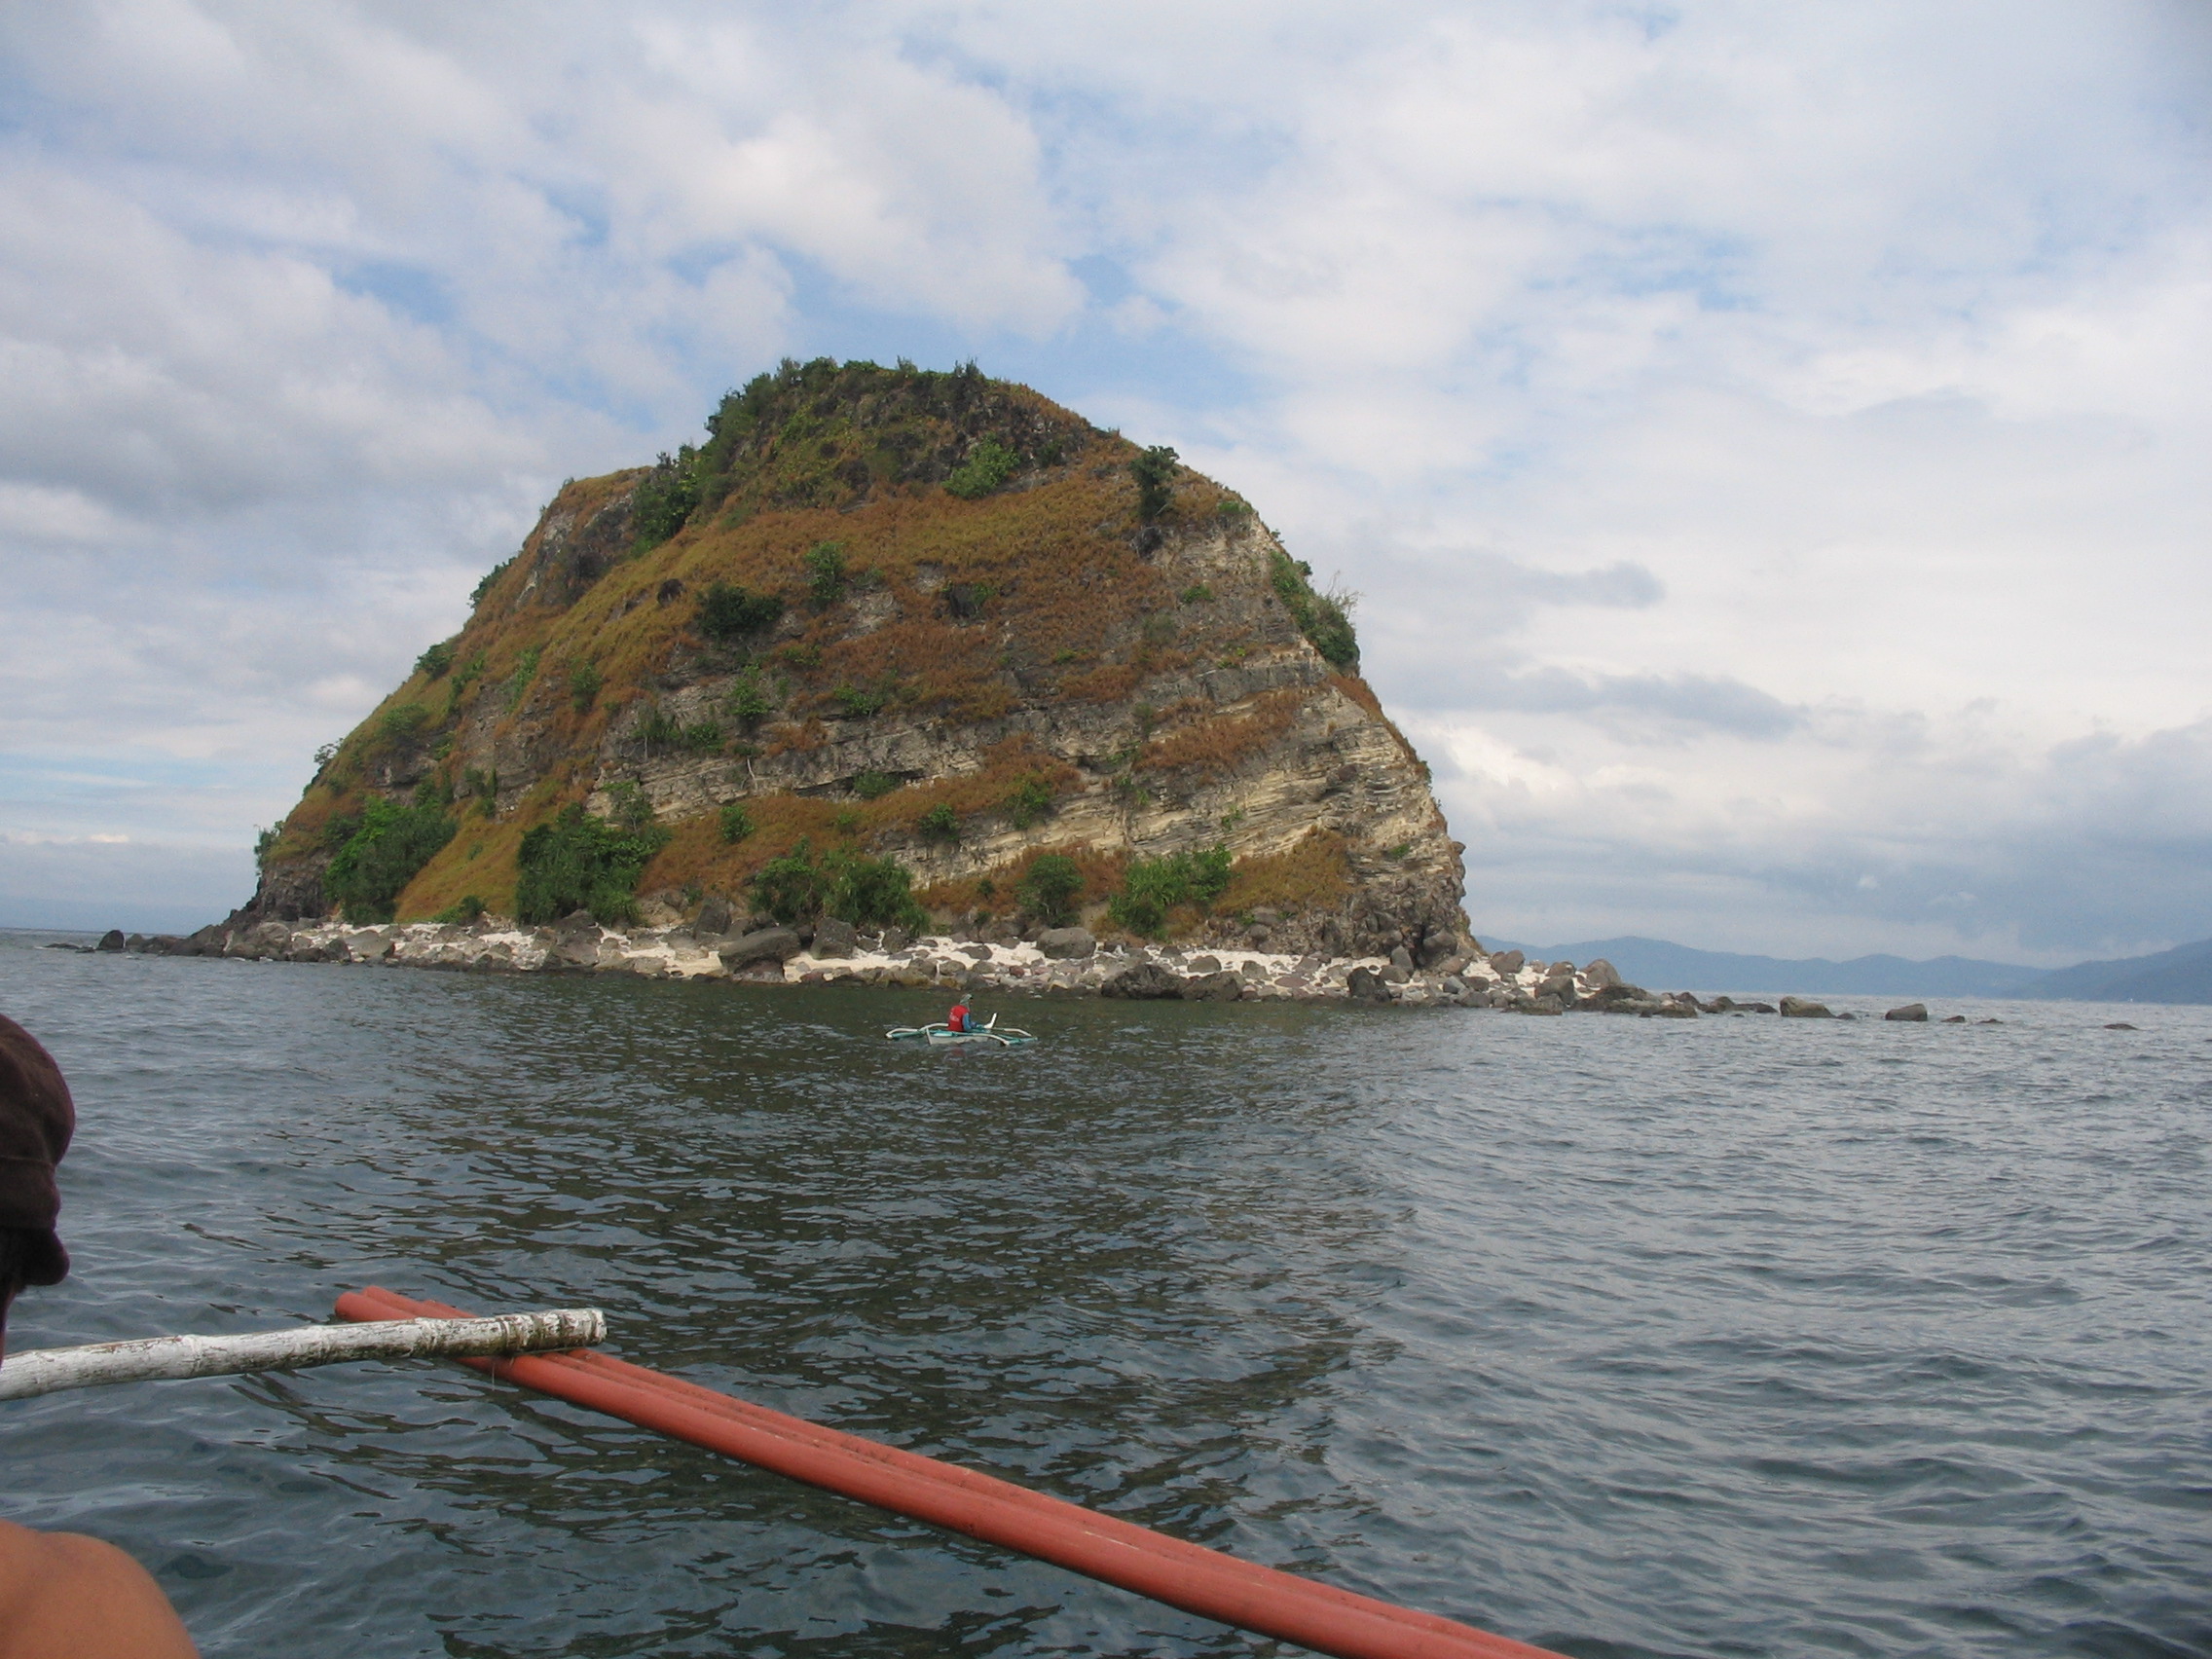 Sombero Island